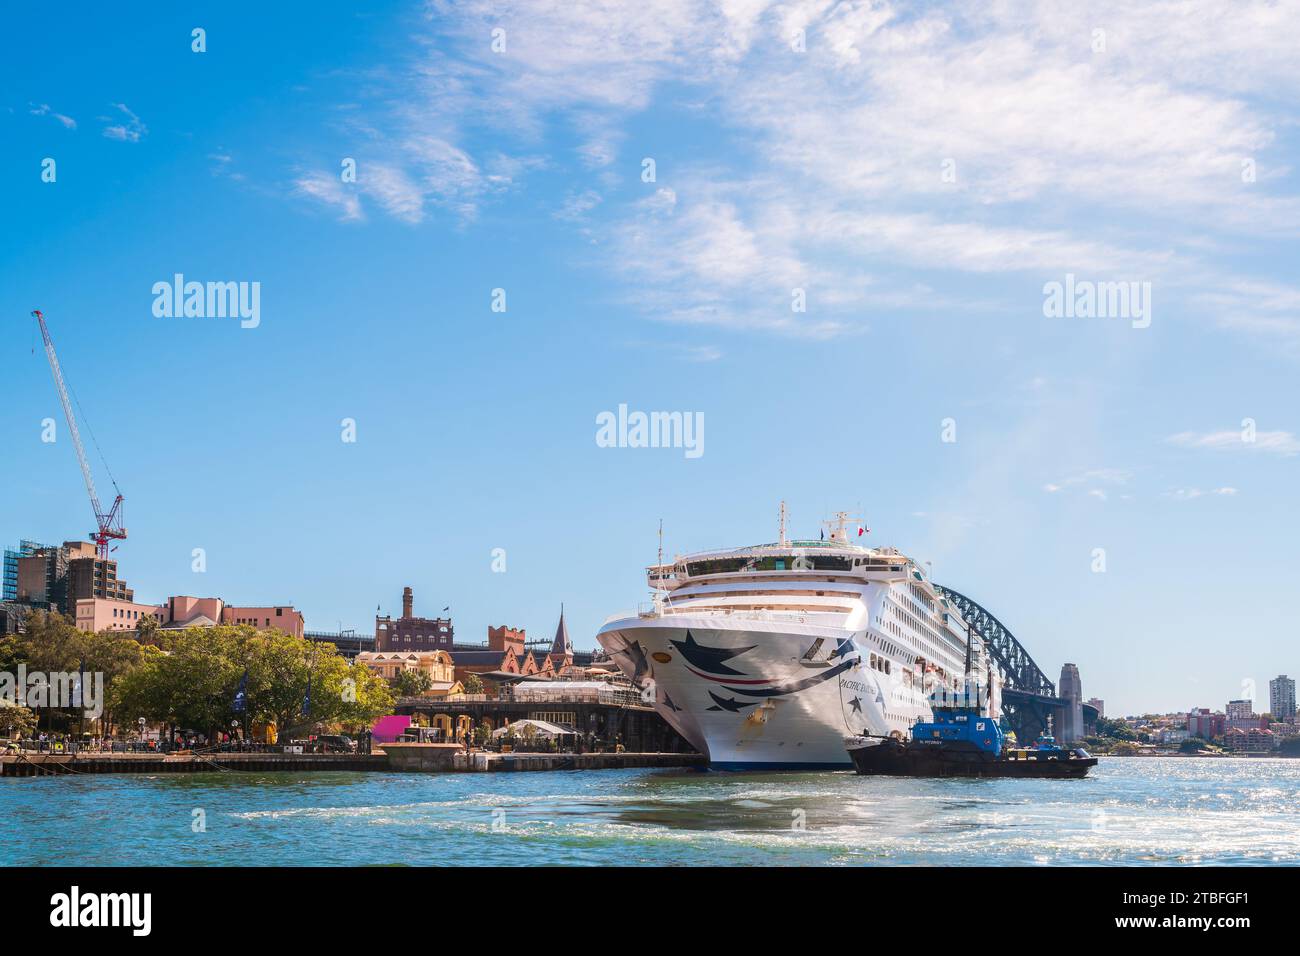 Sydney, Australien - 19. April 2022: Das Pacific Explorer-Schiff wird nach seinem Triumpfe vom Hafen von Sydney zum White Bay Cruise Terminal gezerrt Stockfoto